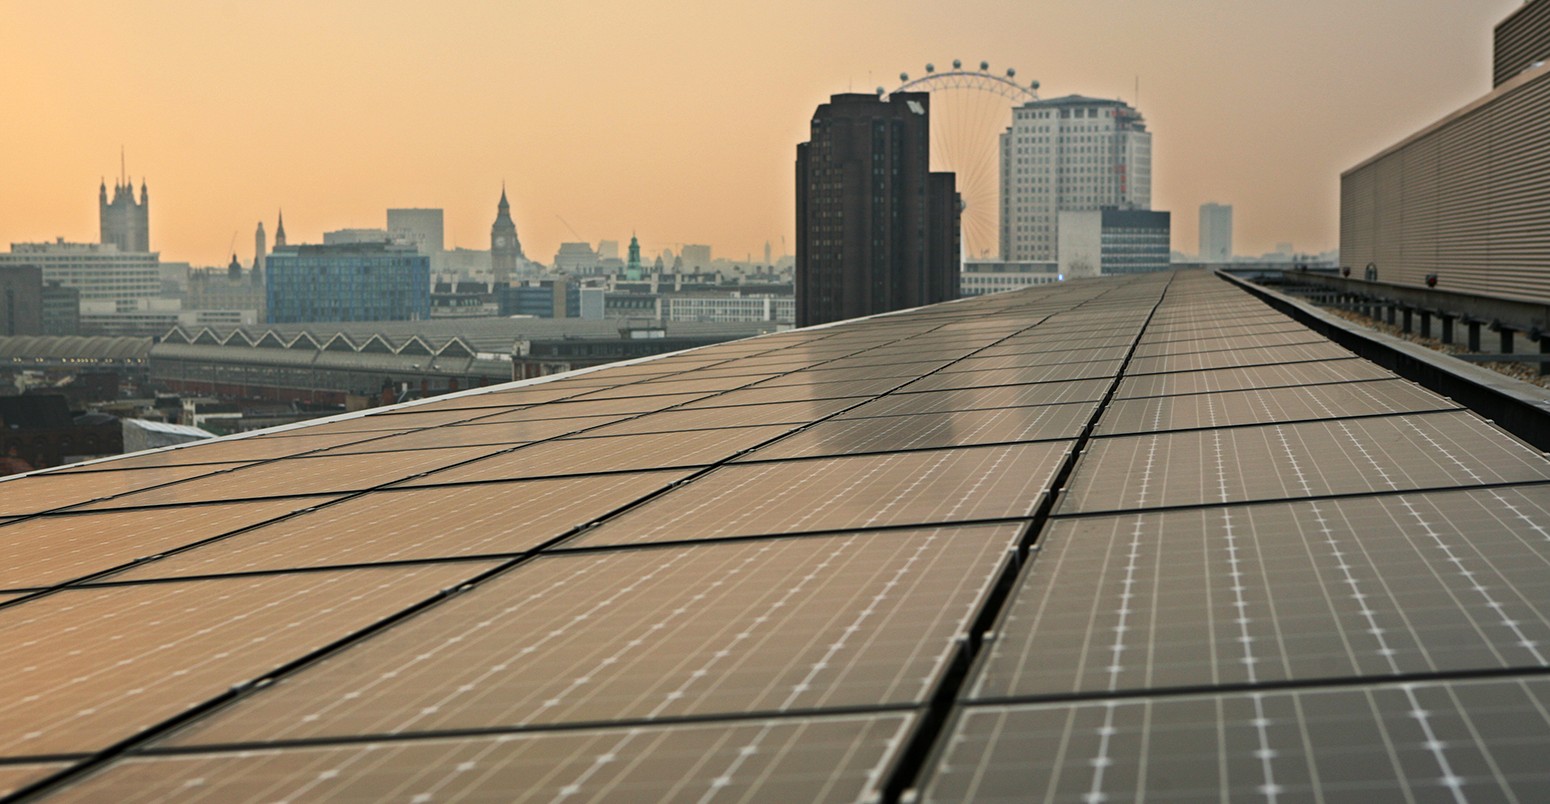 可再生能源——太阳能光伏(PV)面板覆盖体育学校的房子的屋顶,的家乡伦敦气候变化机构和伦敦发展署。这个可再生能源旗舰项目是由建筑师威尔获奖设计的。必威体育在线注册- - -图像©安德鲁Aitchison的/ / Corbis照片